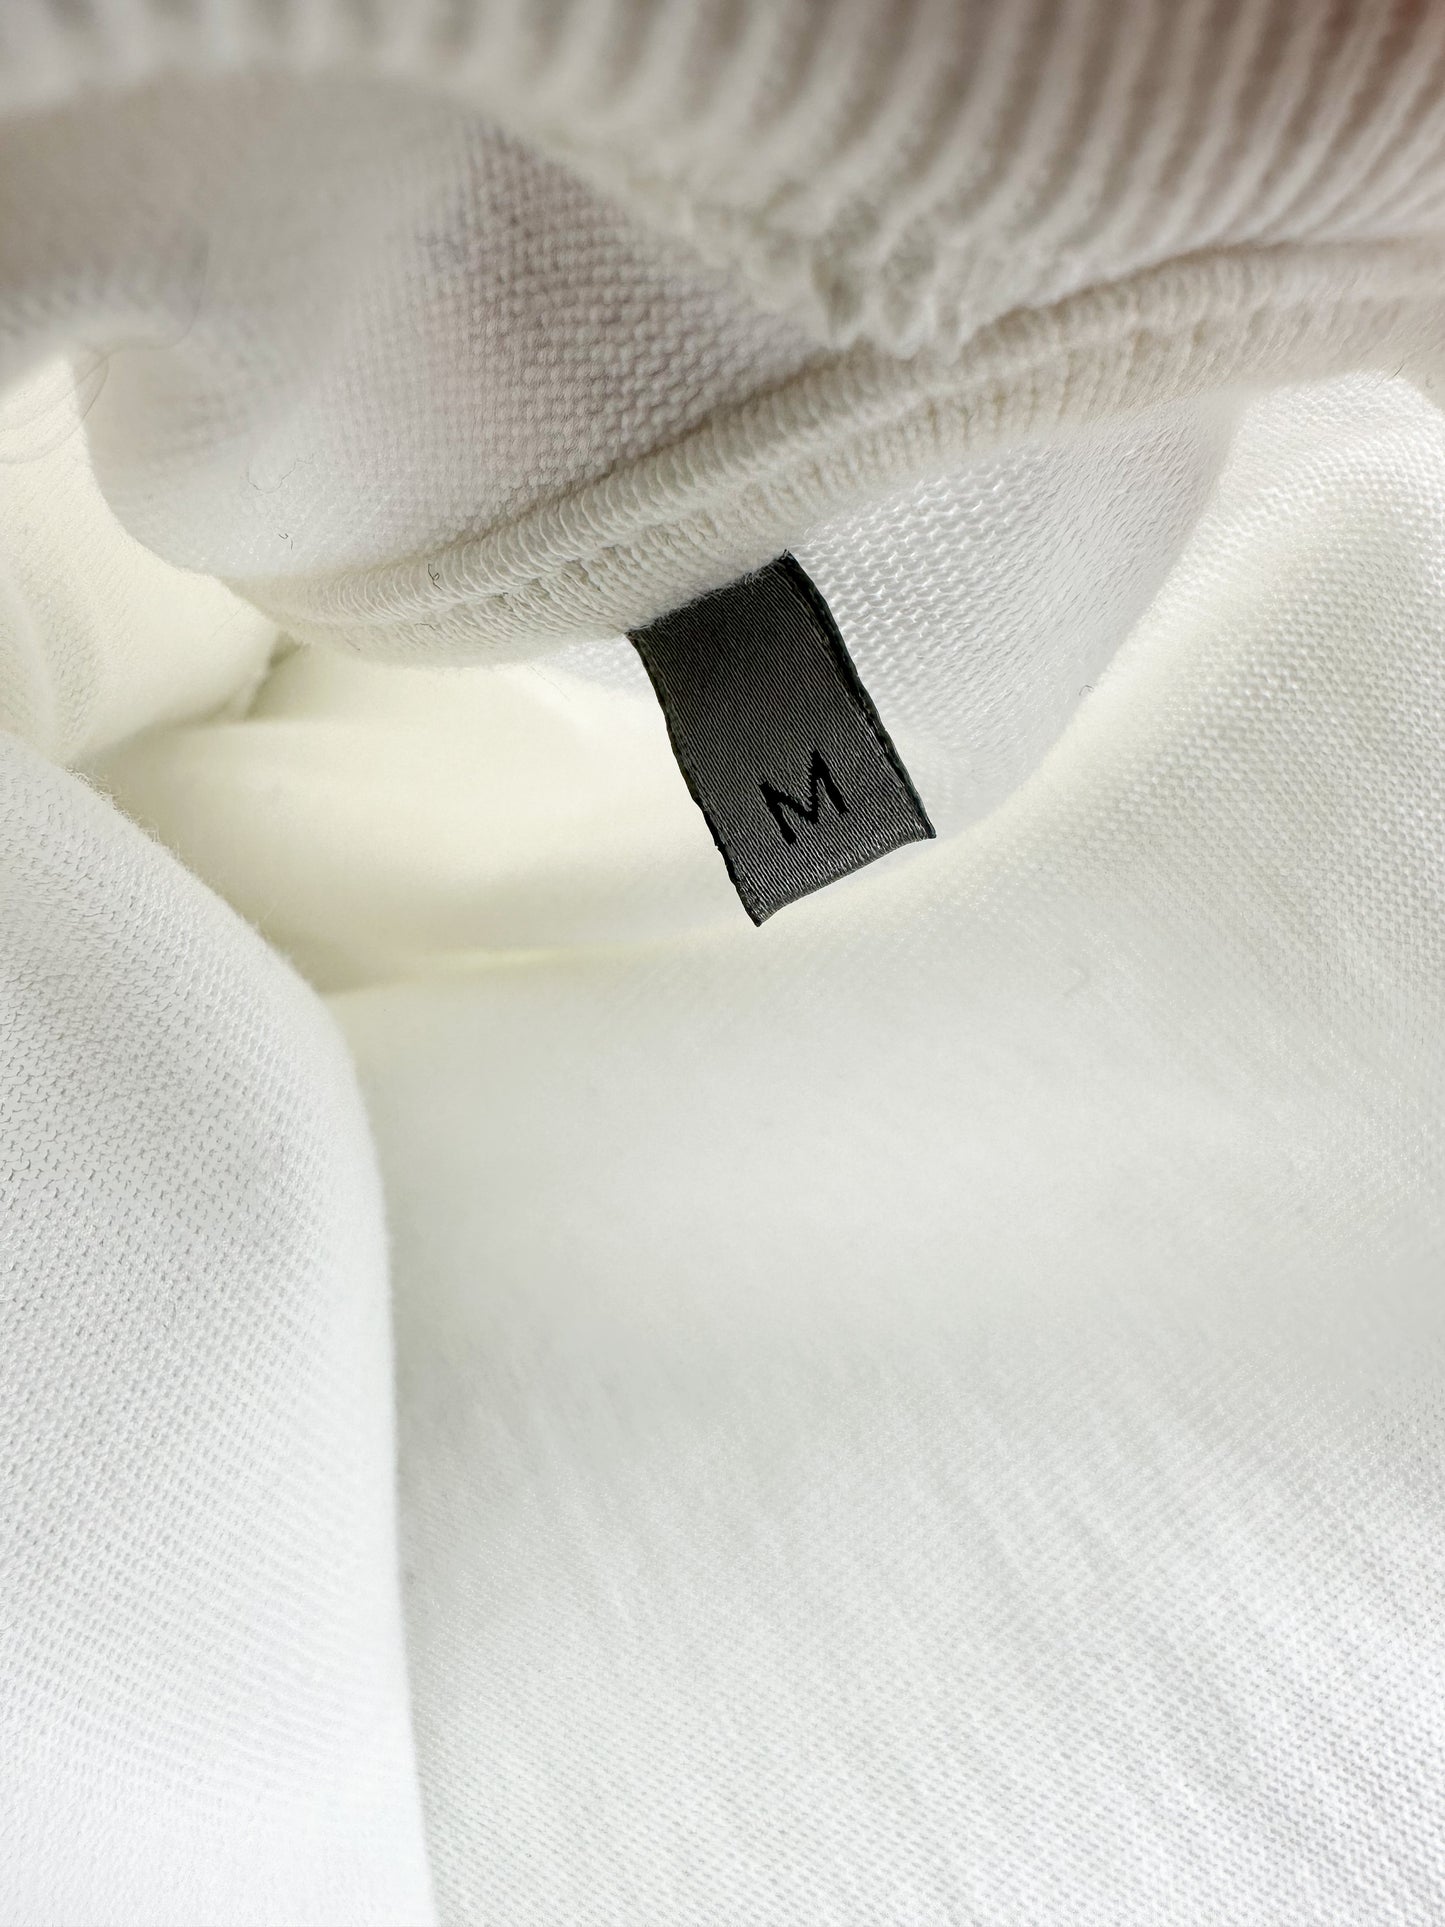 Dior White Dior Et Moi Sequin Embellished Logo T-Shirt